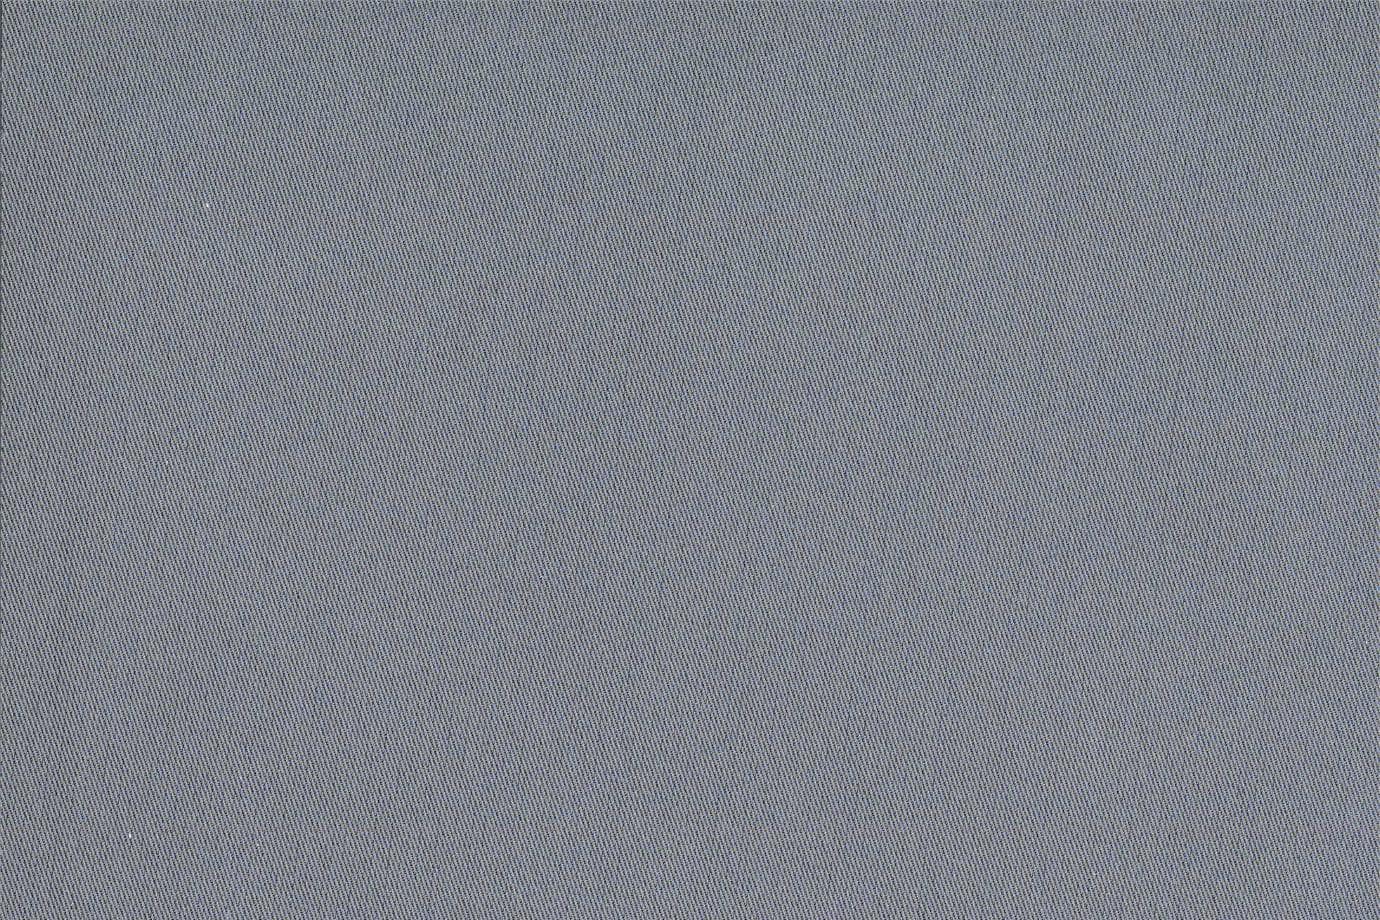 Tessuto per arredamento J1639 ZANNI 025 Azzurrite-nott